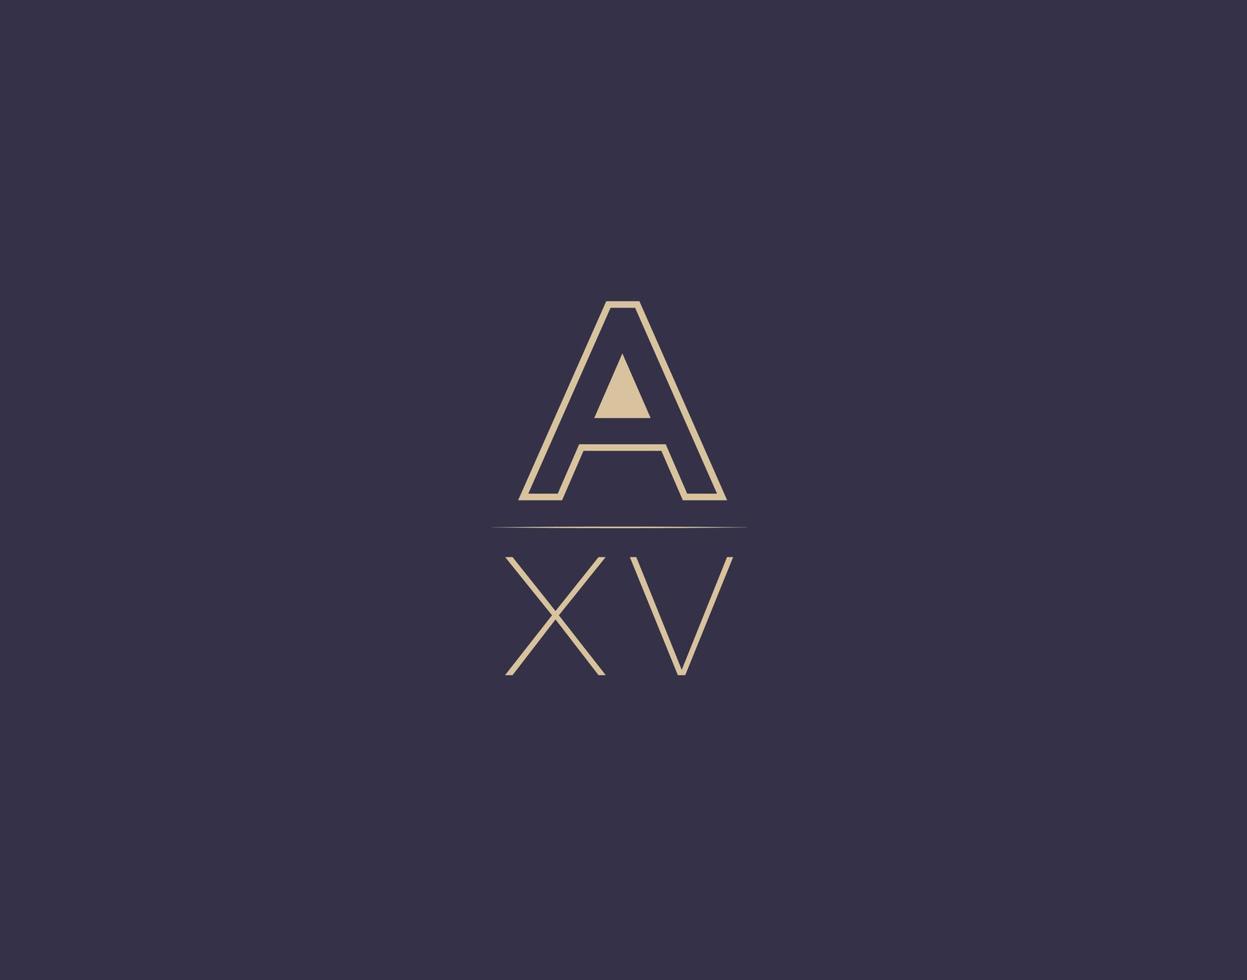 axv carta logotipo diseño moderno minimalista vector imágenes